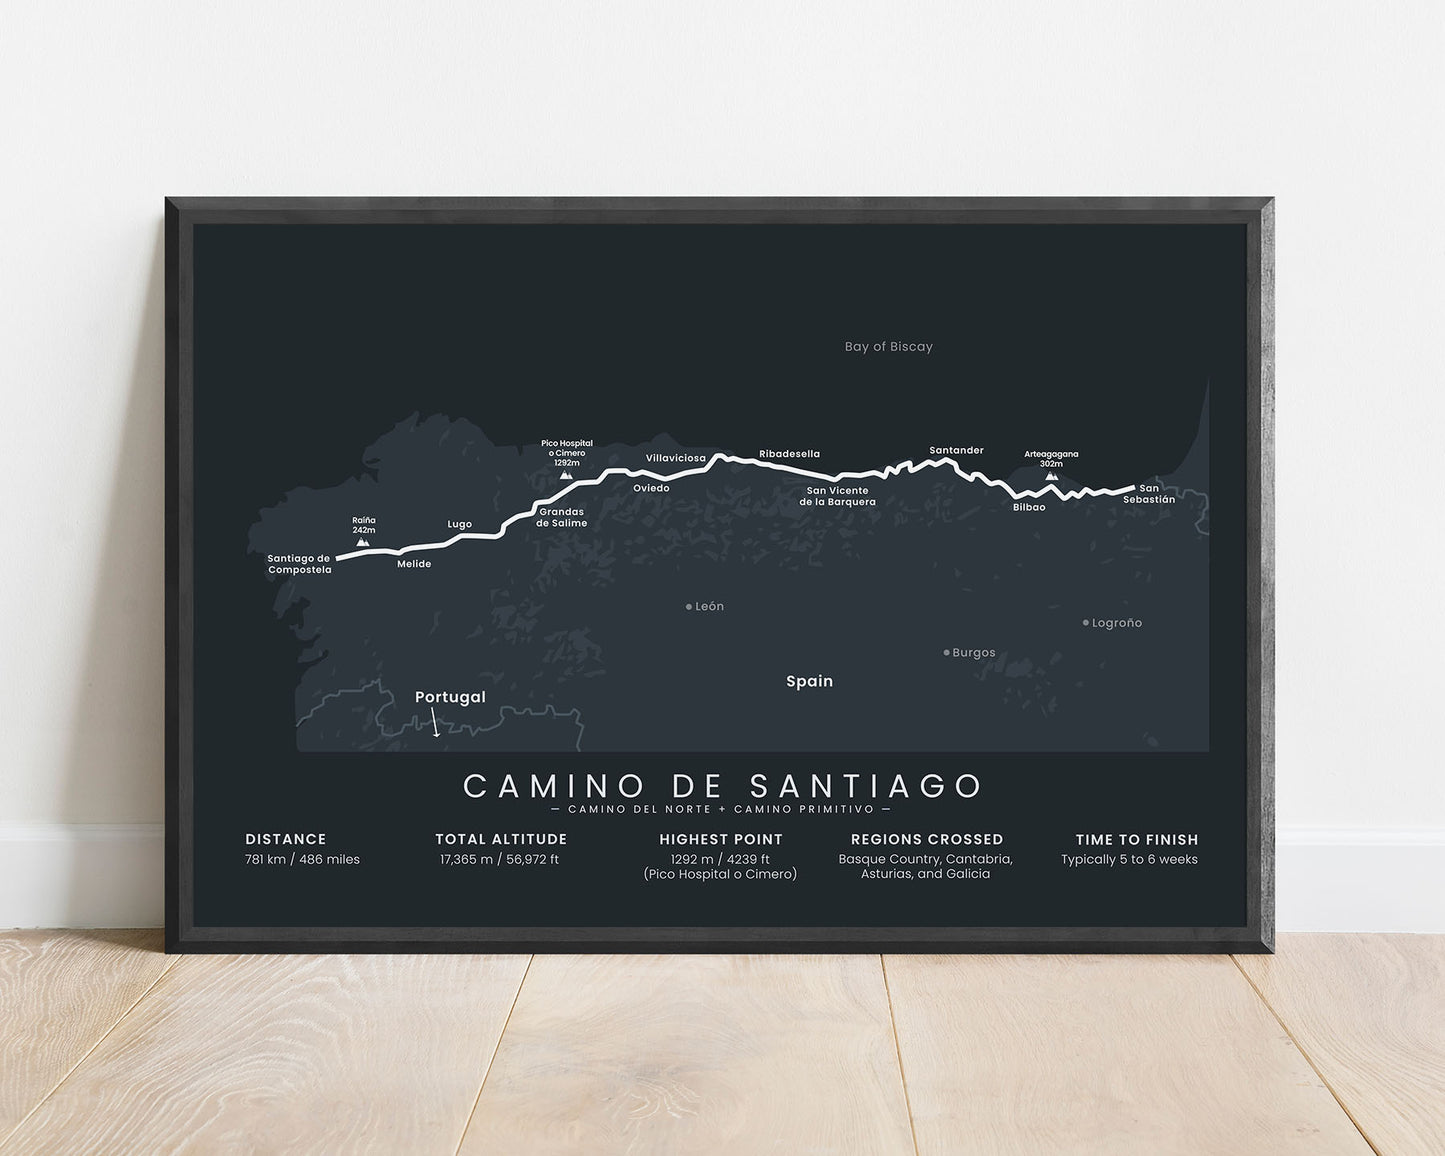 Camino del Norte + Camino Primitivo (Cantabria) thru hike map art with black background